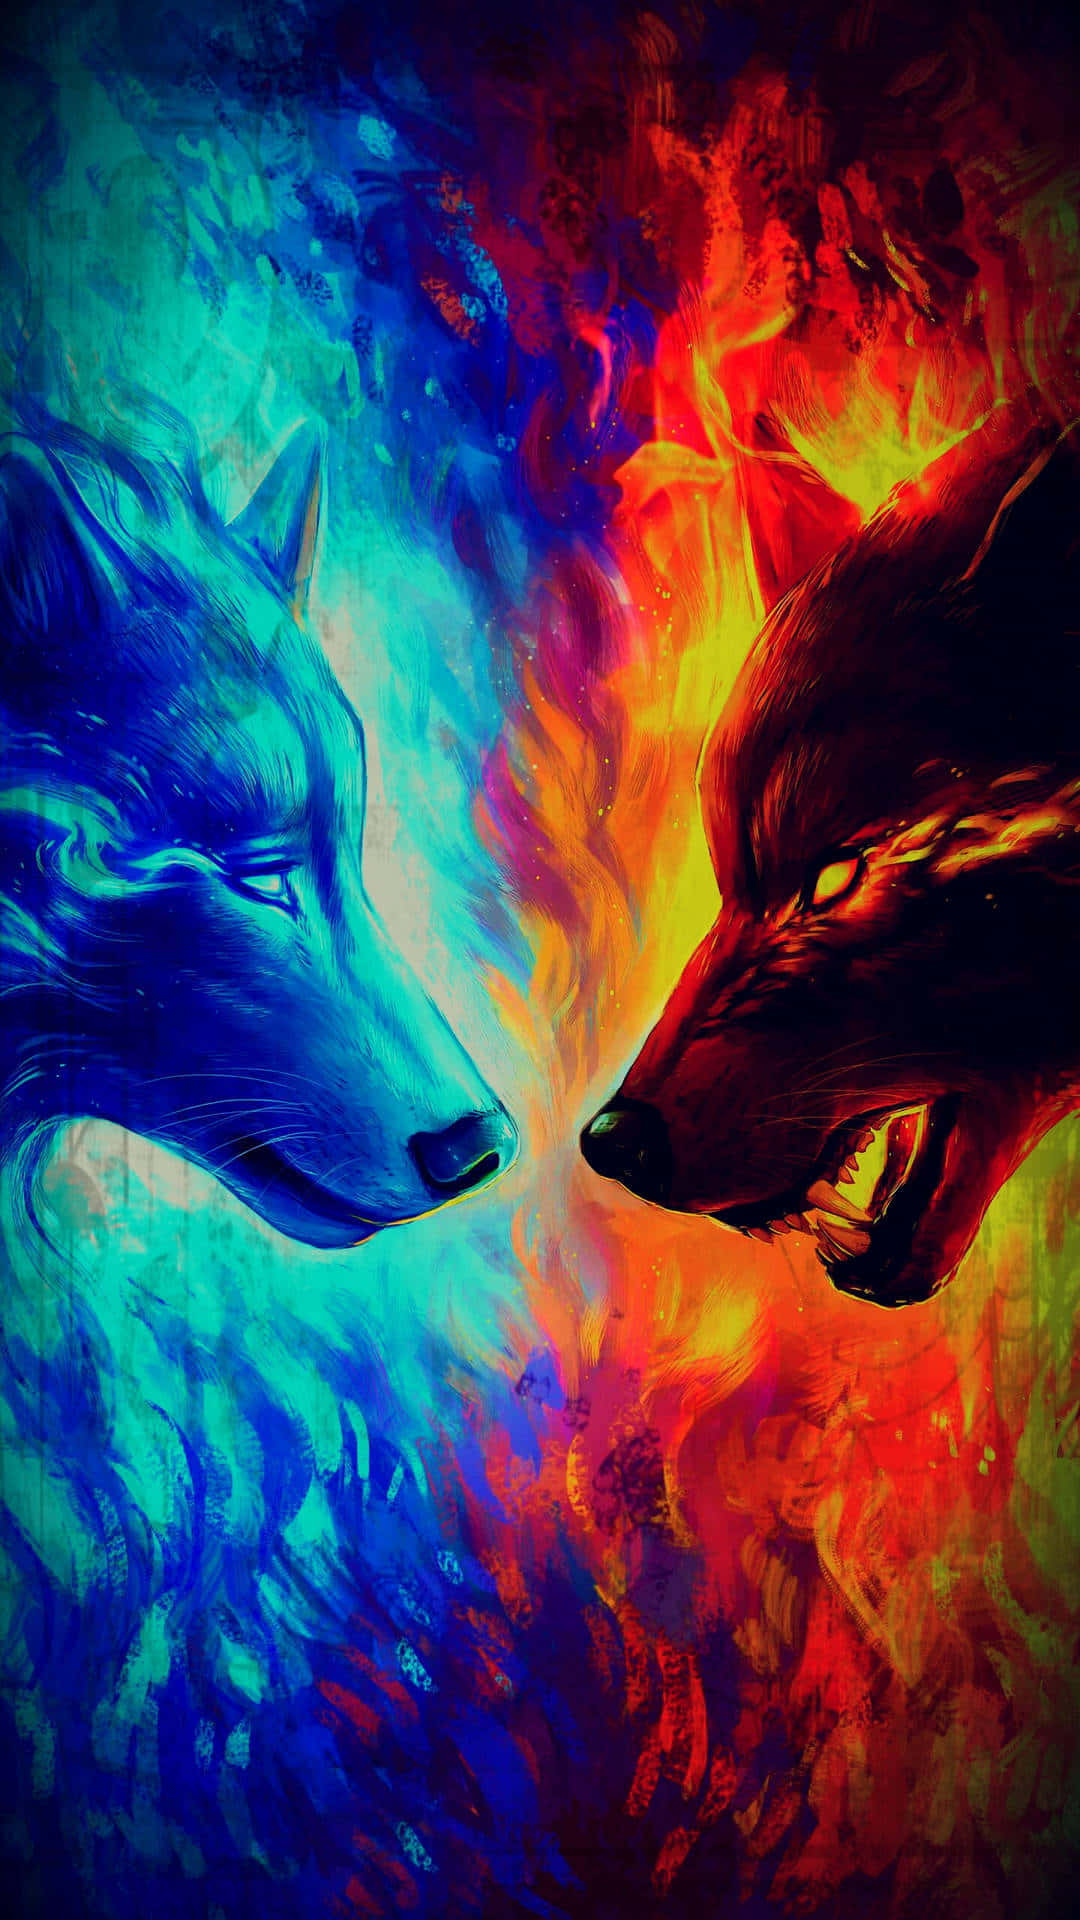 Fireand Ice Wolves Artwork Wallpaper